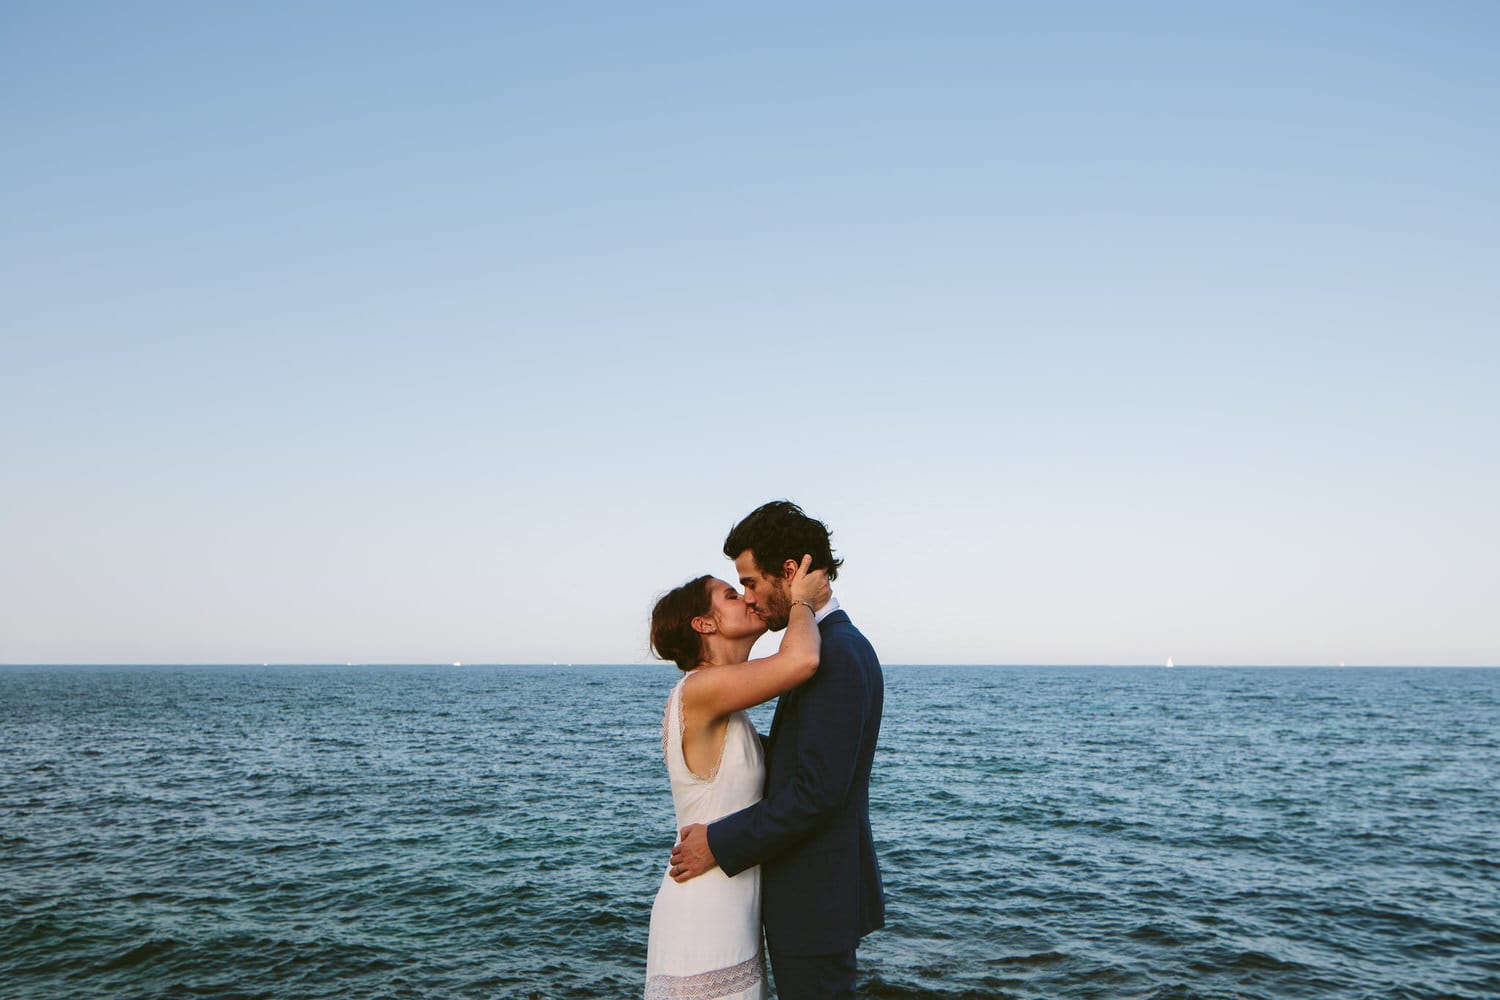 Antony Merat - Photographe de mariage - Blog mariage La mariée aux pieds nus